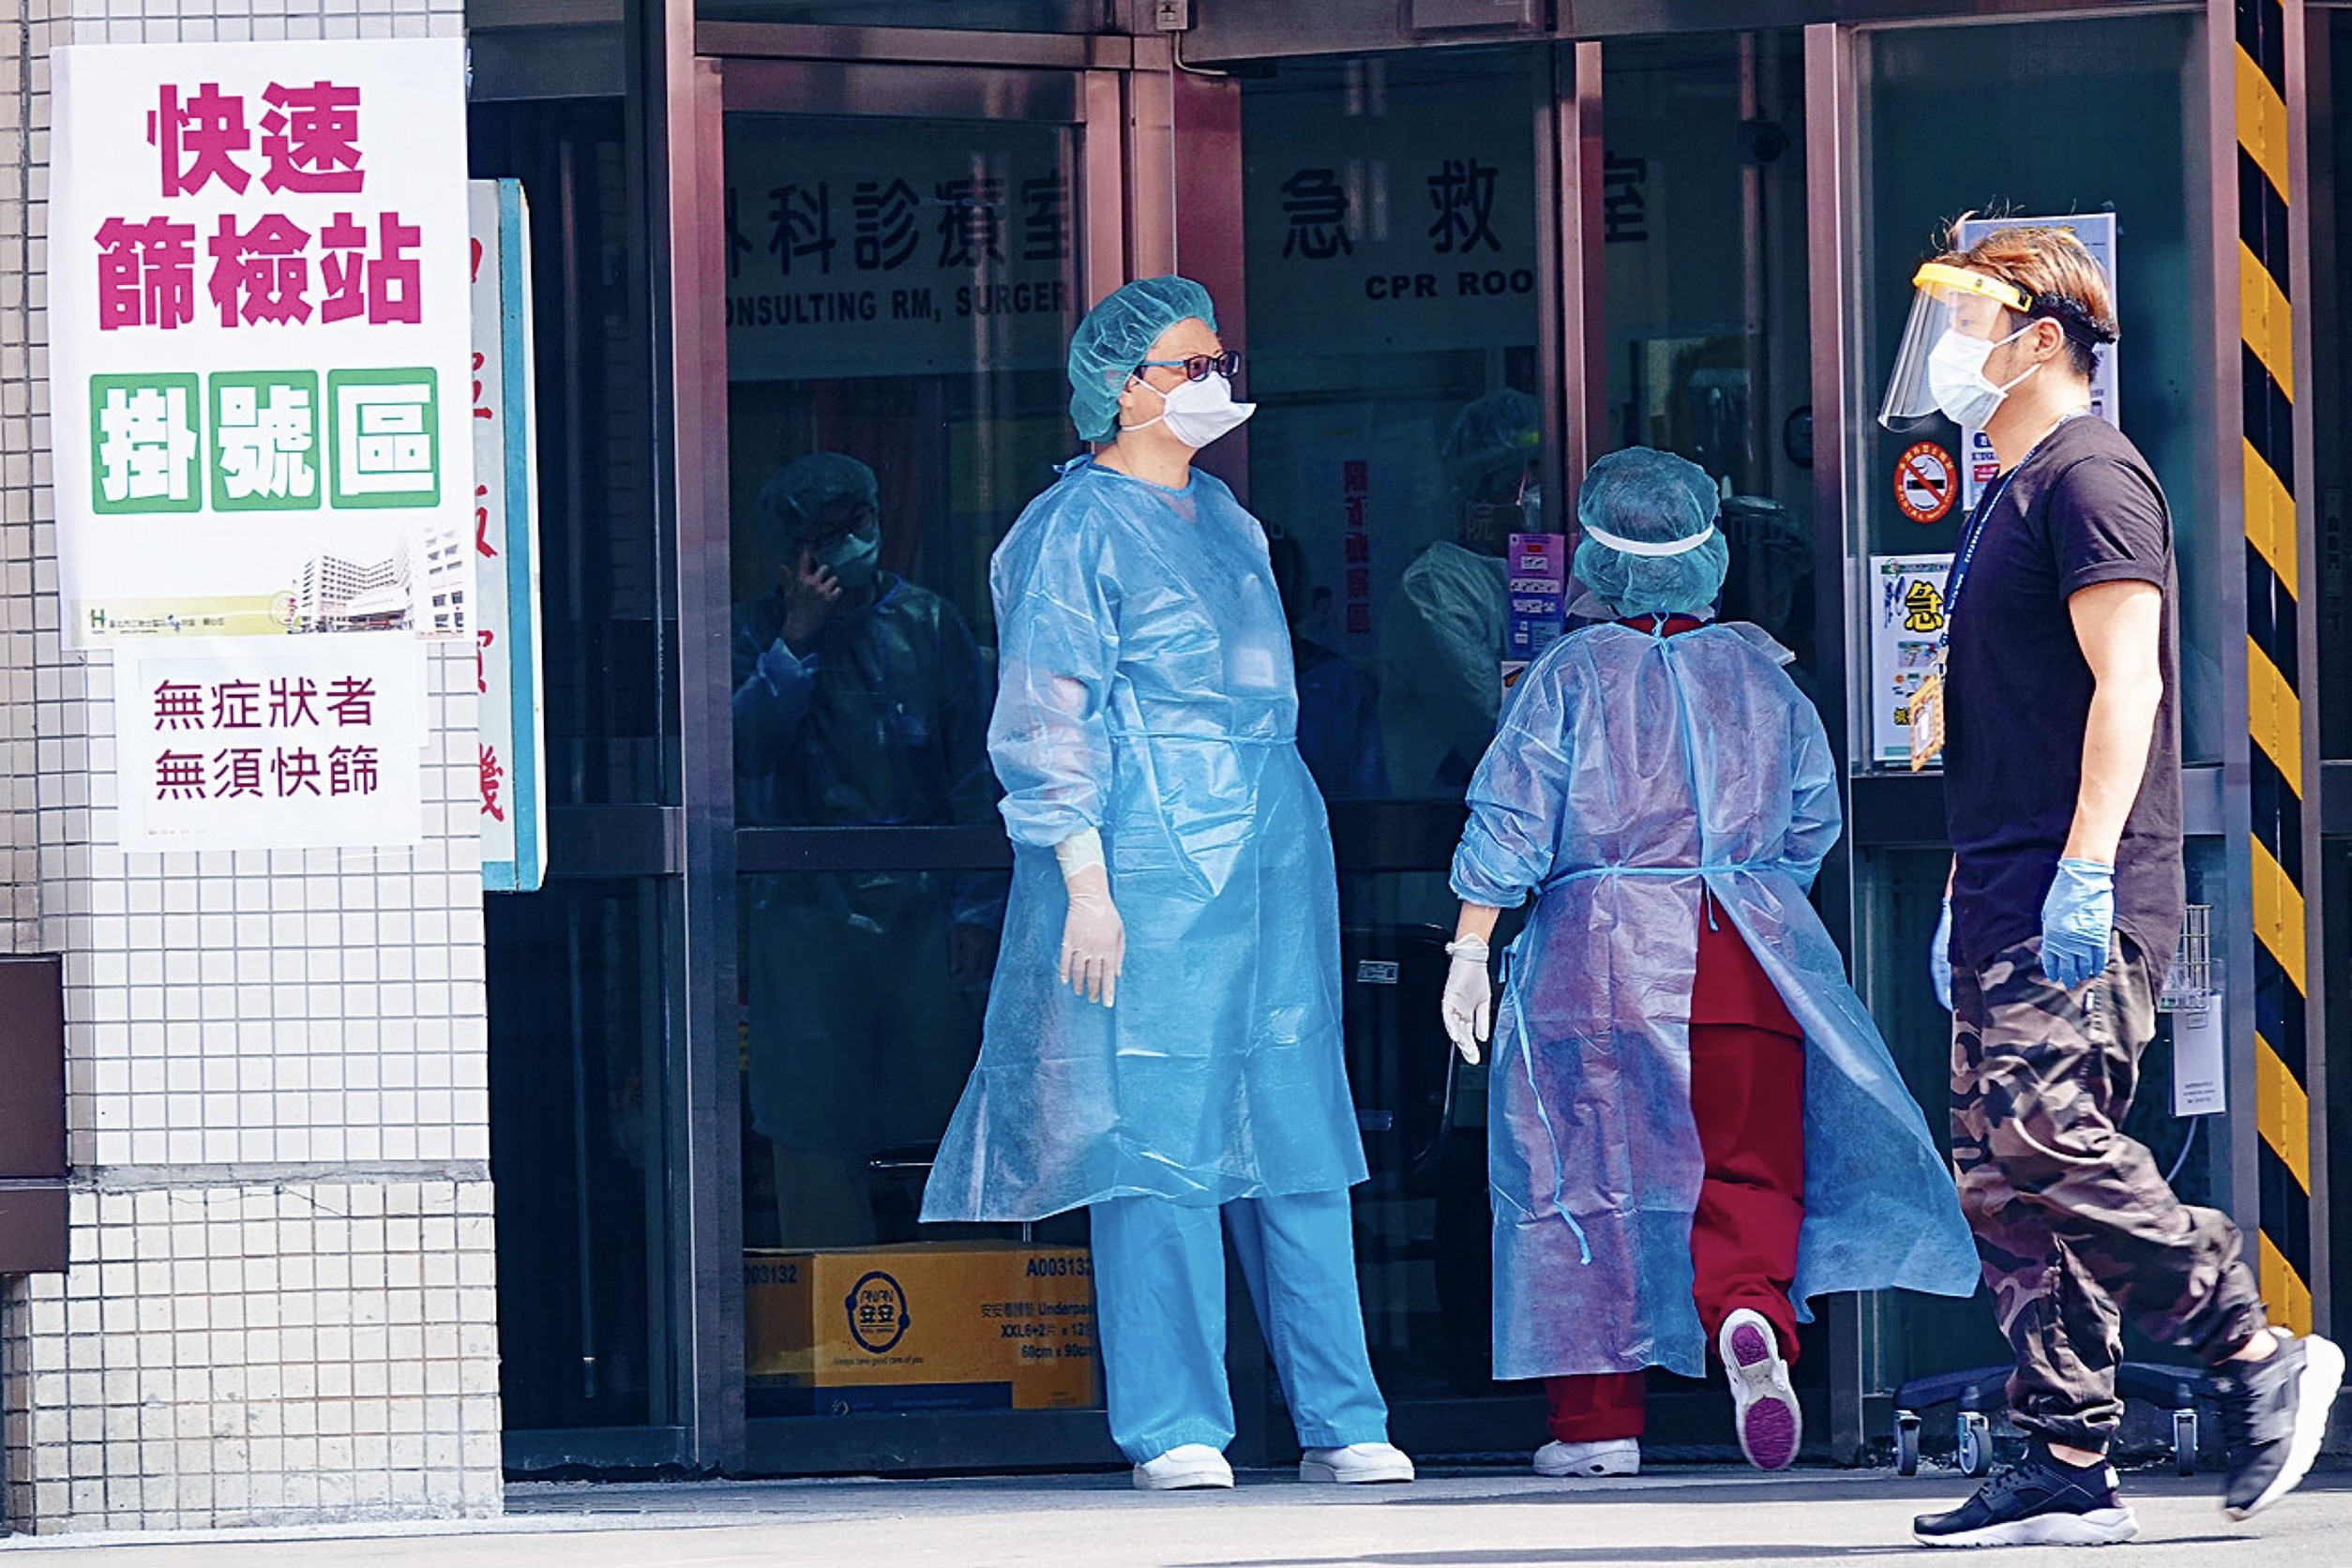 Tính đến hiện tại, tỷ lệ tử vong do COVID-19 của Đài Loan là khoảng 3,38%, cao hơn mức trung bình của toàn thế giới, tỷ lệ ca bệnh nặng là người già trên 60 tuổi chiếm tới 30% khiến số giường bệnh có sẵn trong các bệnh viện không đủ để dùng. (Nguồn ảnh: Phân viện Trung Hiếu của bệnh viện Liên Hợp thành phố Đài Bắc)